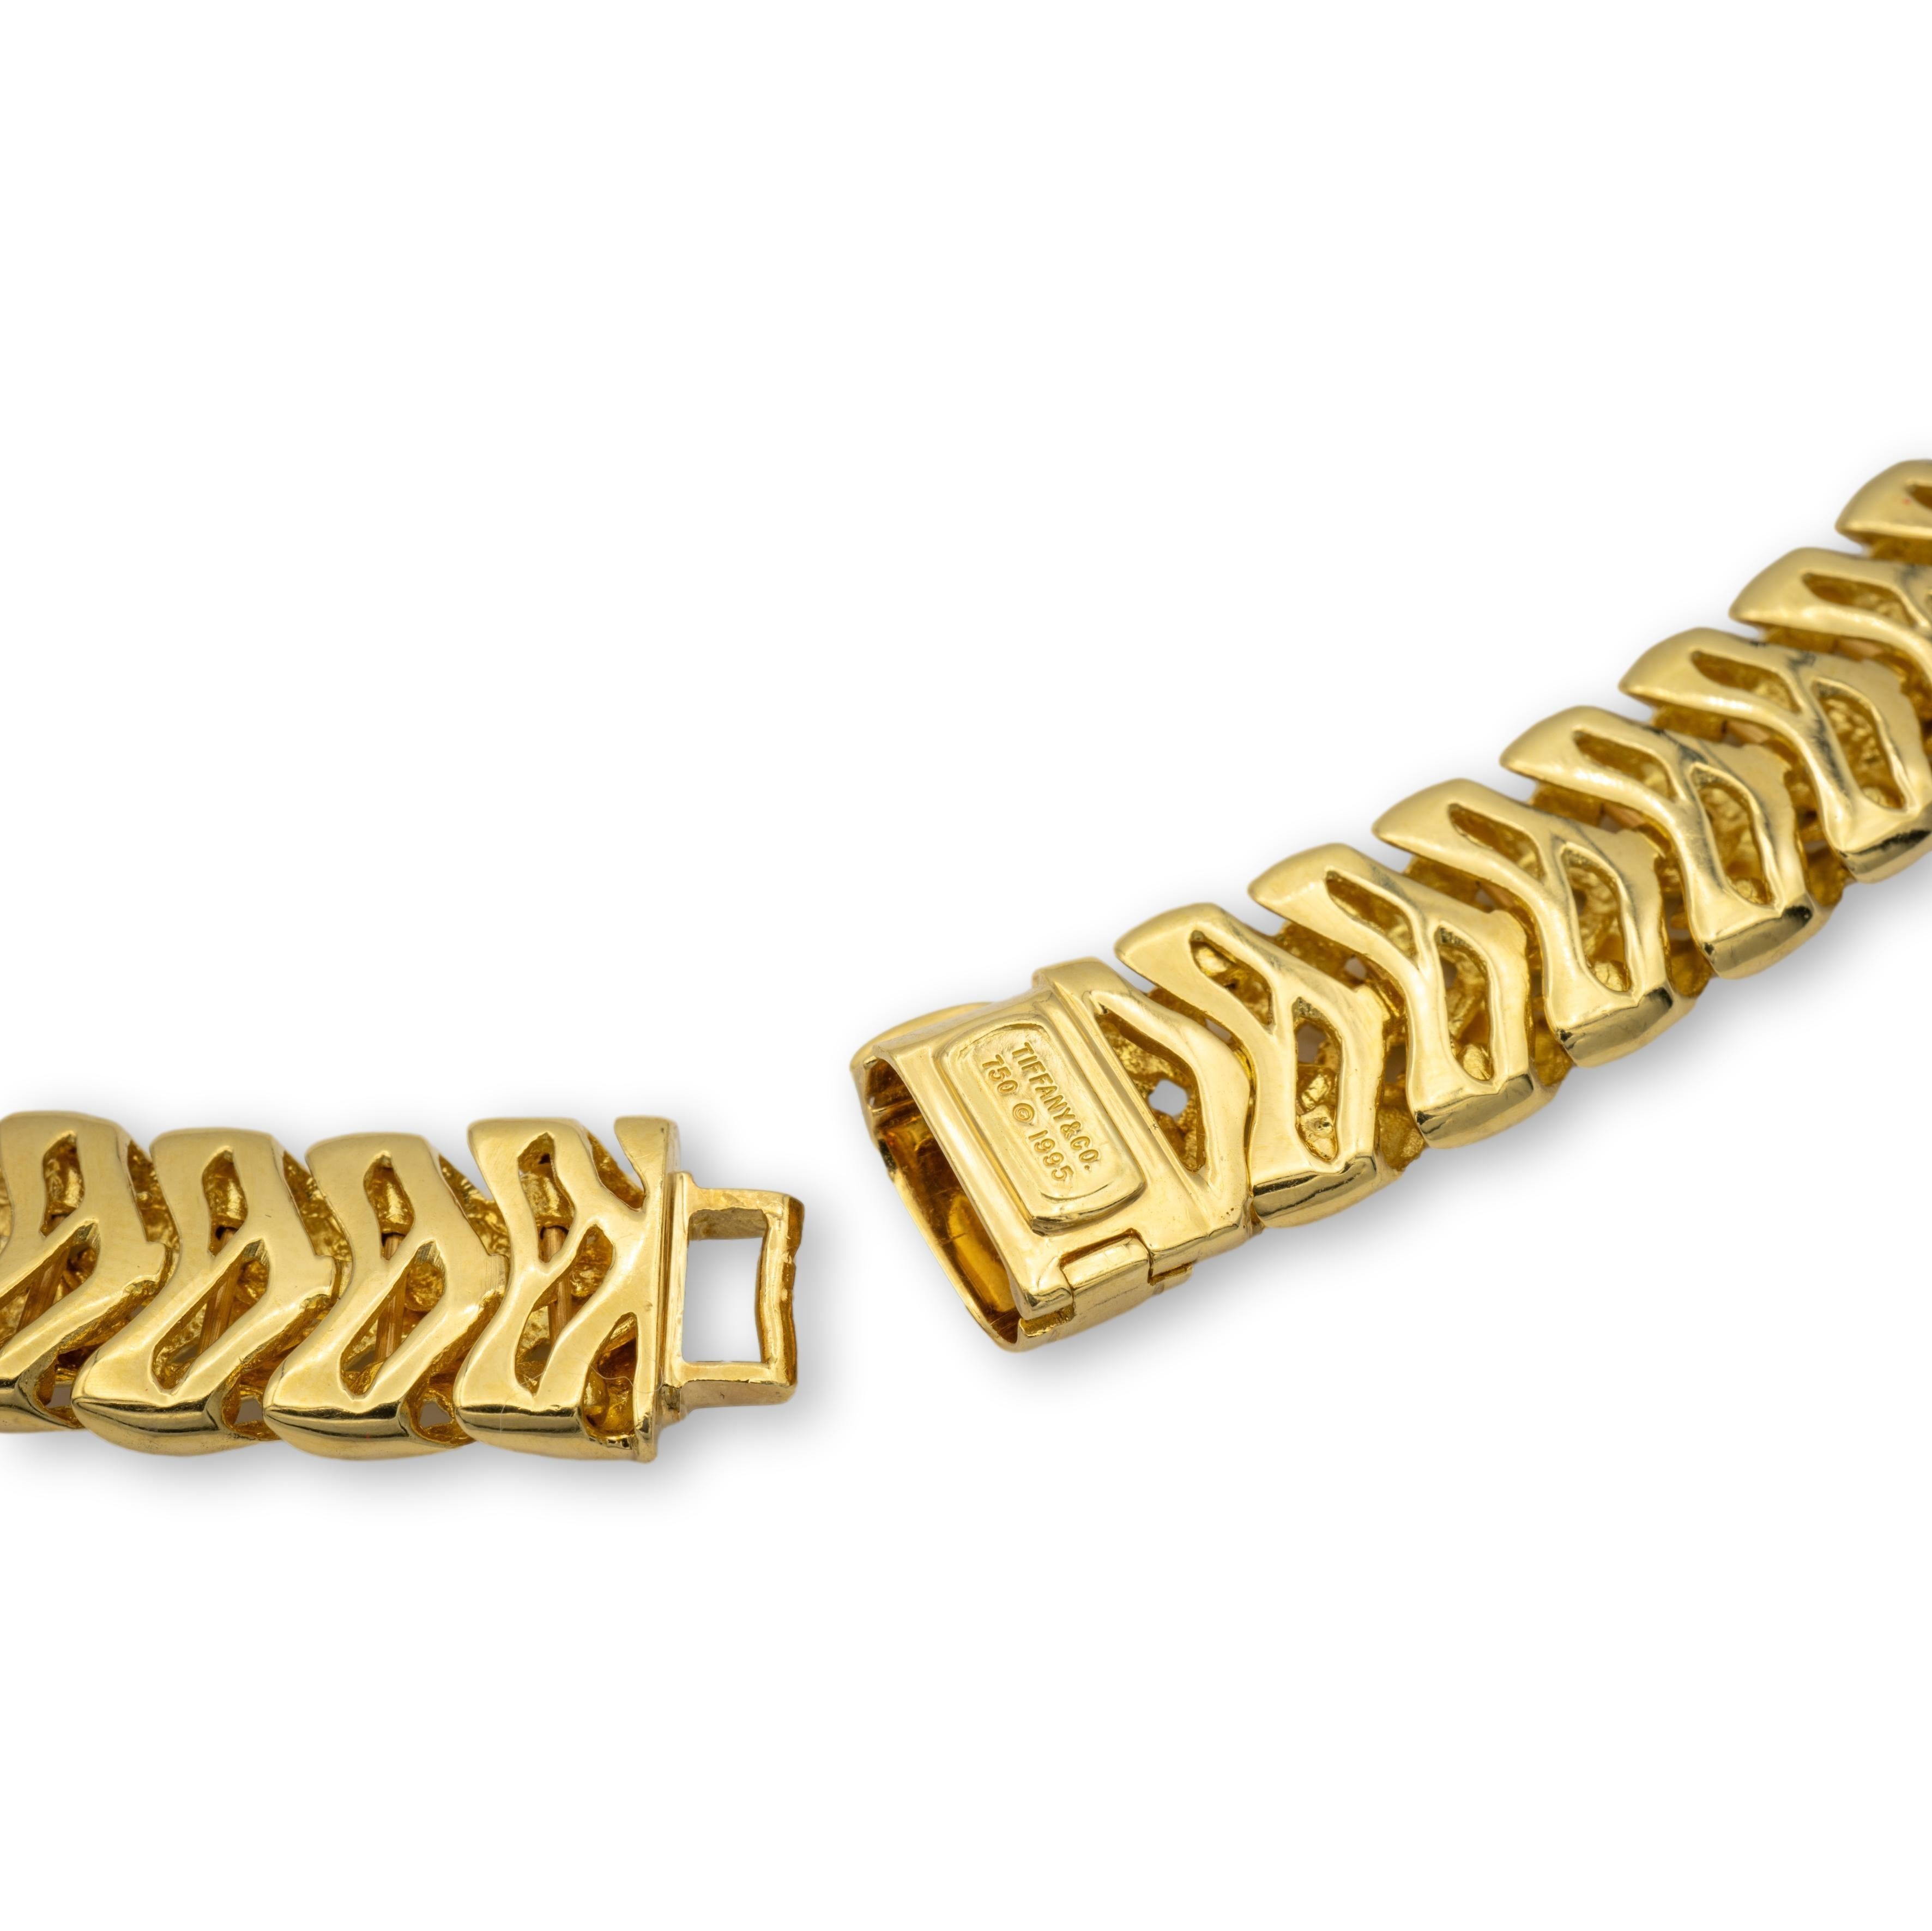 Tiffany & Co. Vintage-Halskette der Collection Vannerie aus 18 Karat Gelbgold mit Korbgeflecht und einem großen, faltbaren Karabinerhakenverschluss. Die Halskette wiegt beeindruckende 121,9 Gramm und wurde von Tiffany mit 17